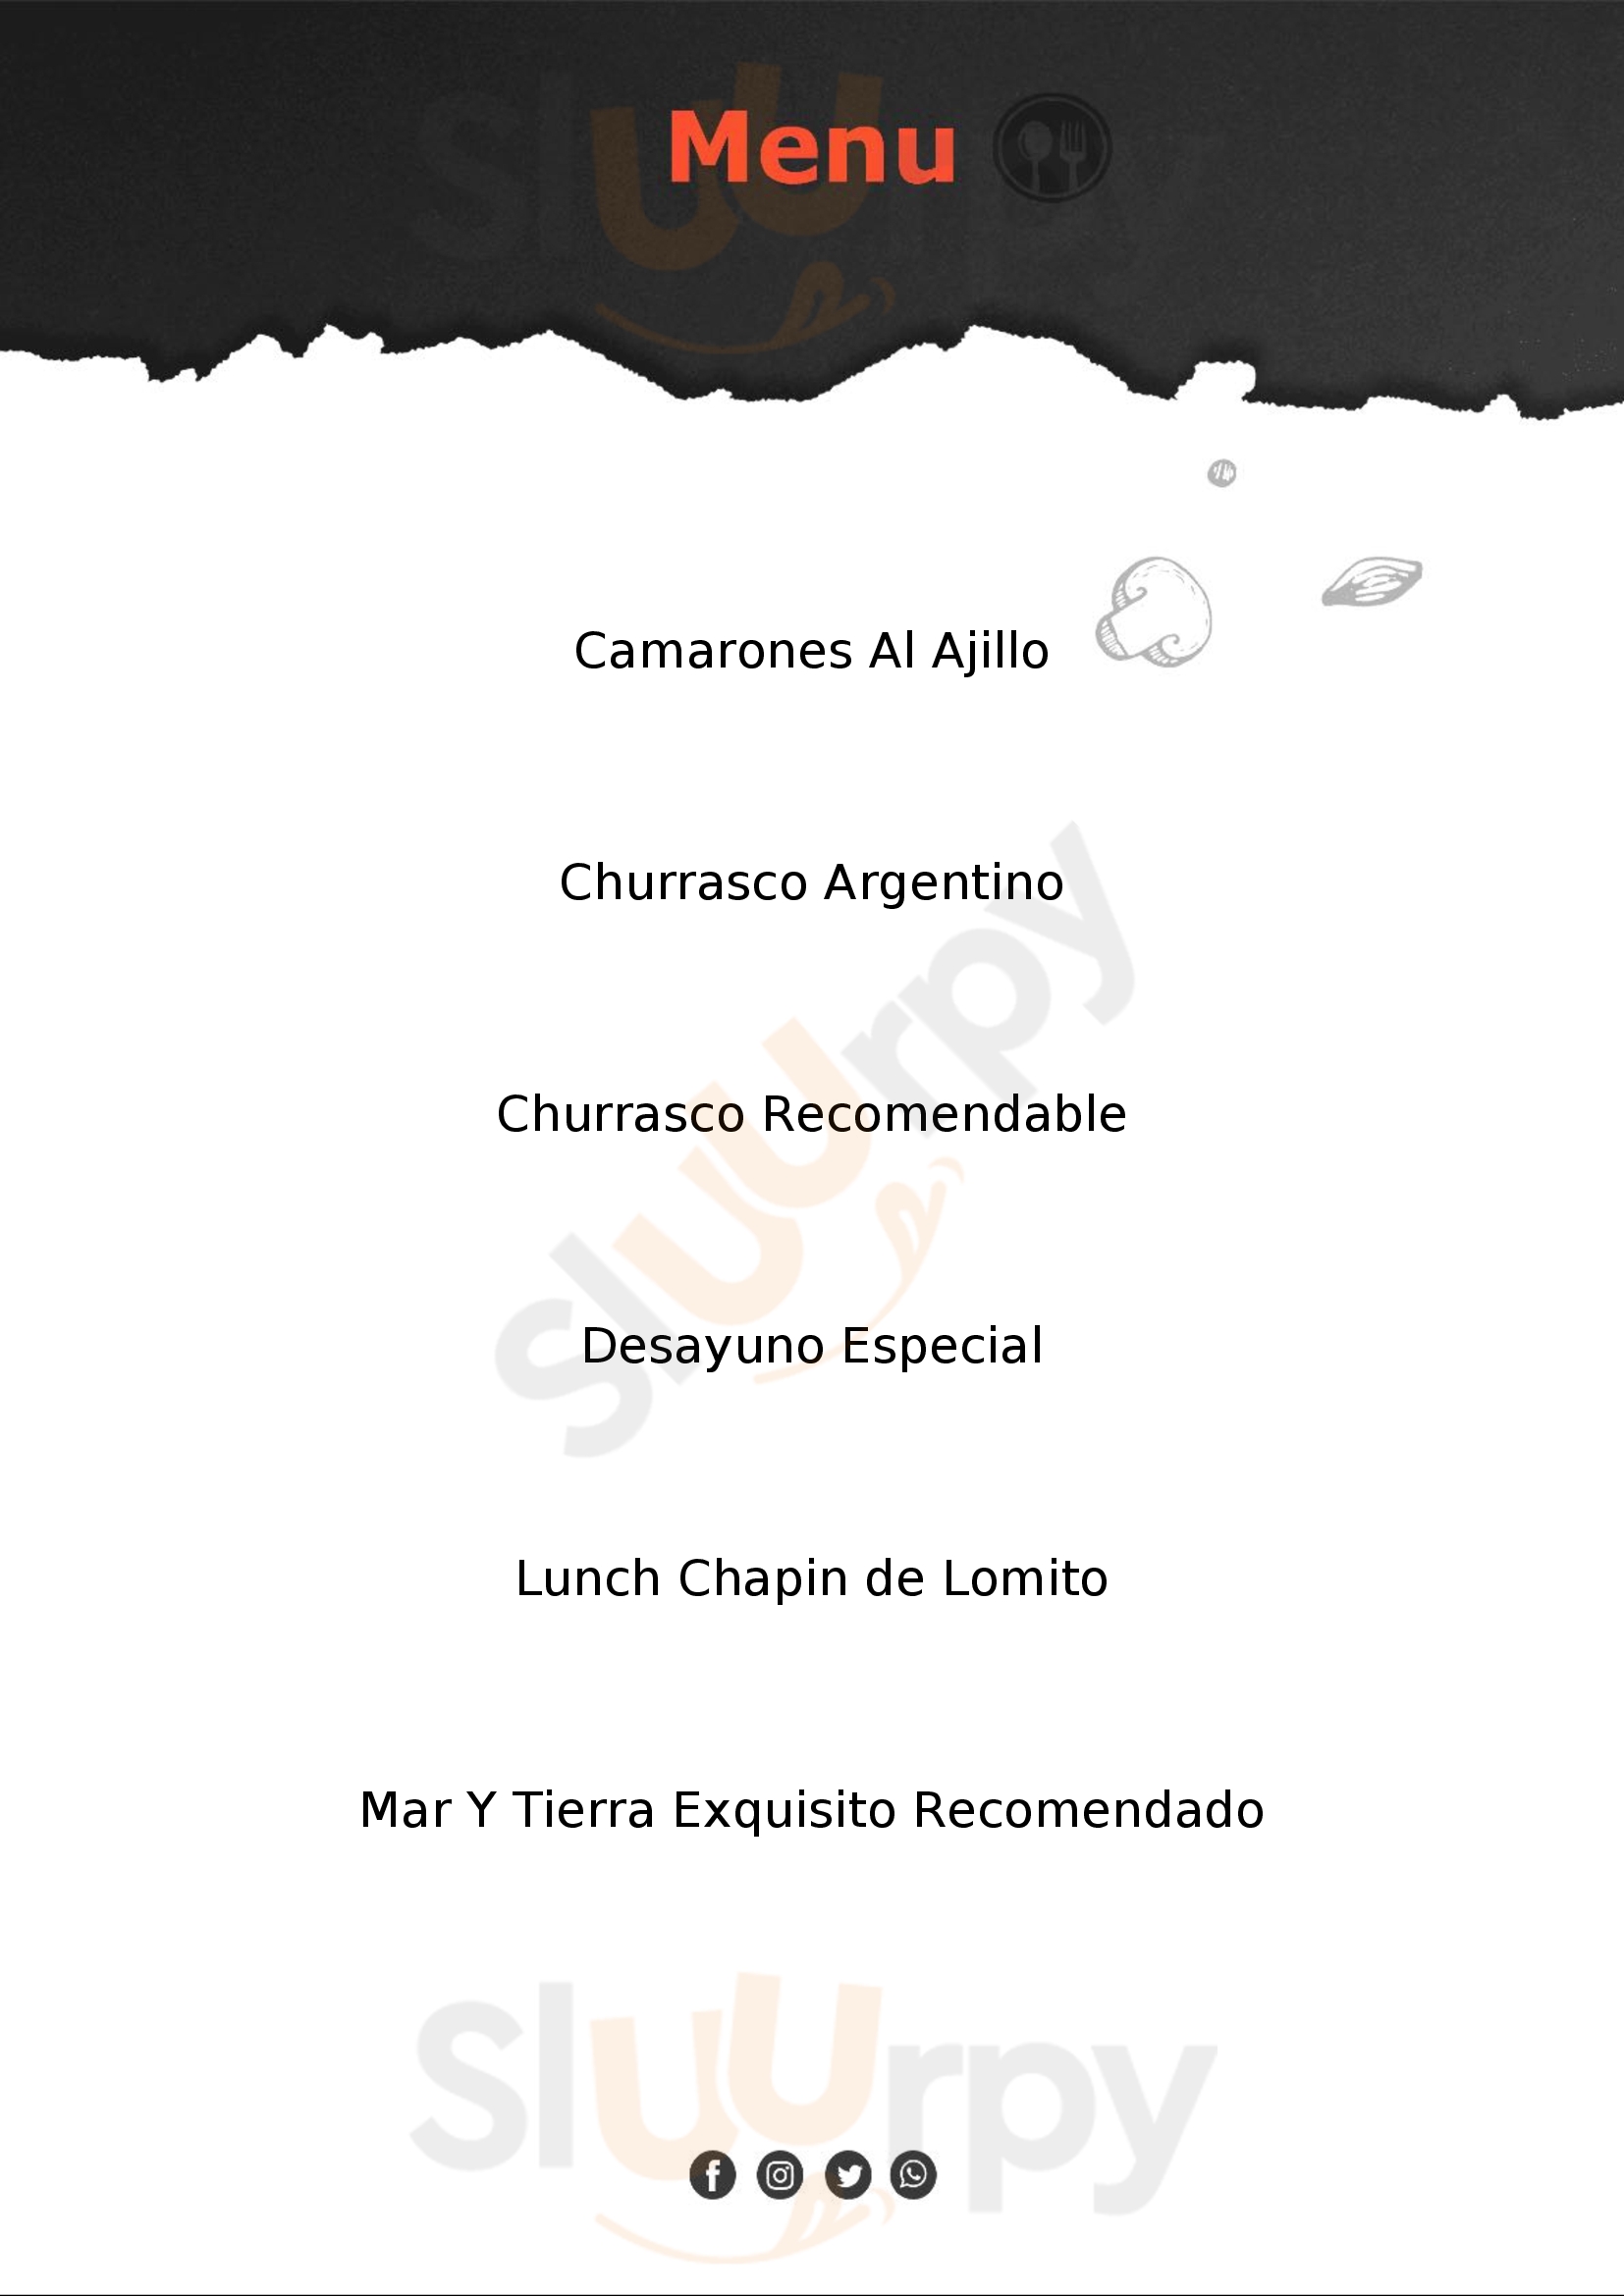 Tango Restaurante Ciudad de Guatemala Menu - 1